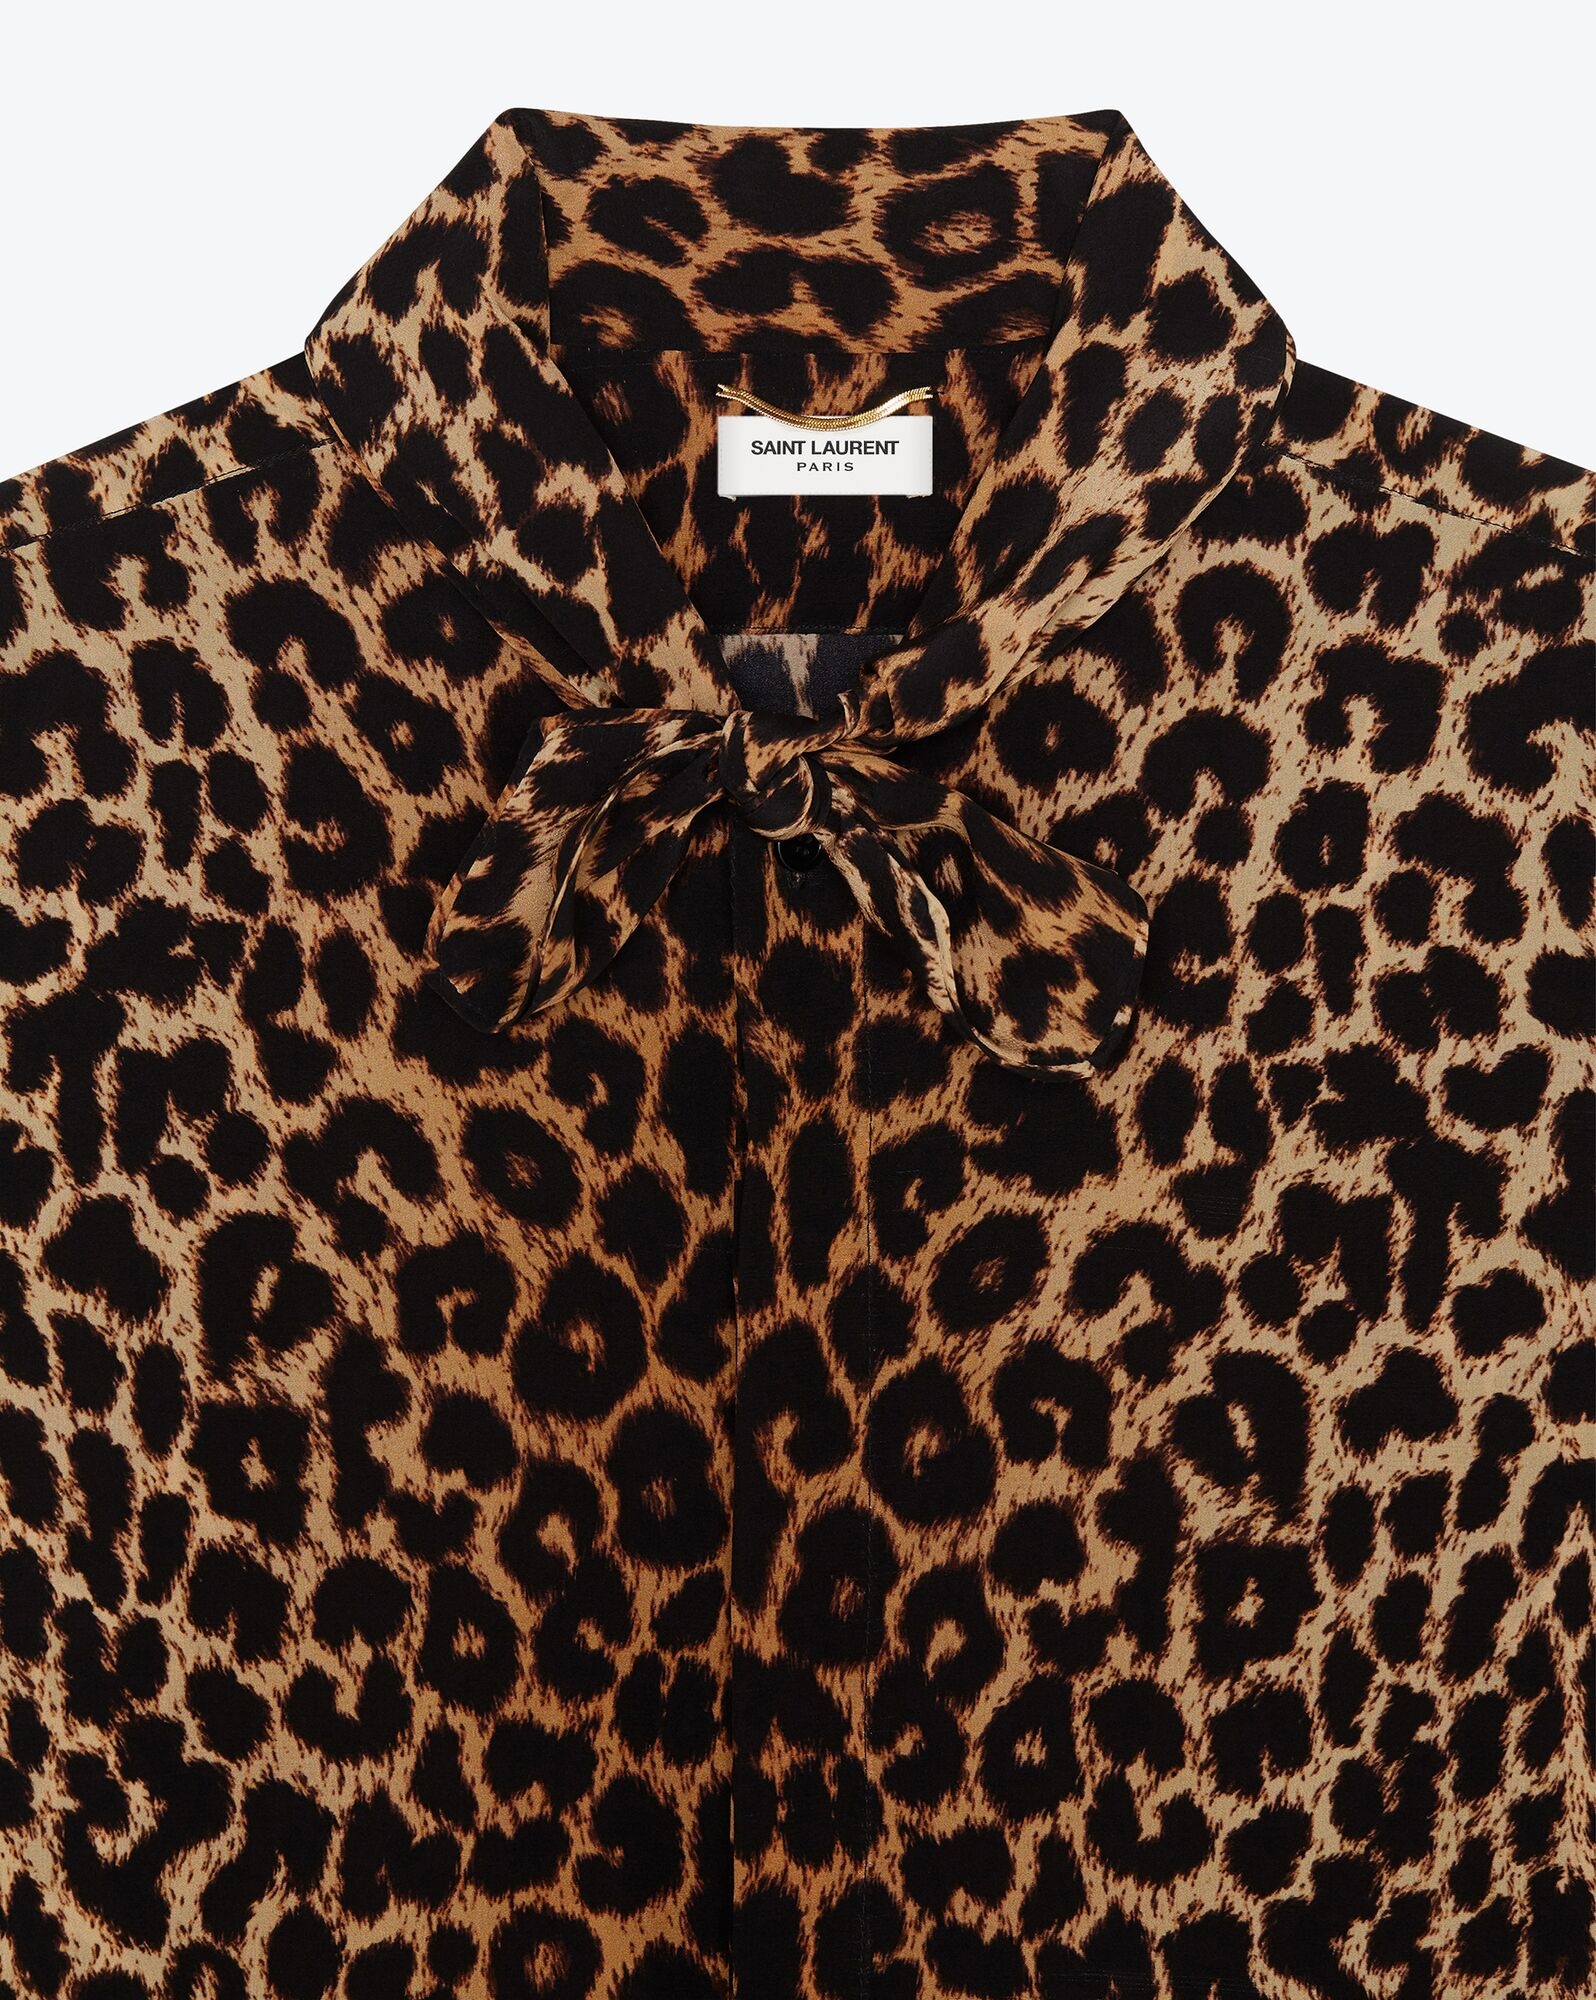 lavallière-neck shirt in leopard-print silk crepe de chine - 3